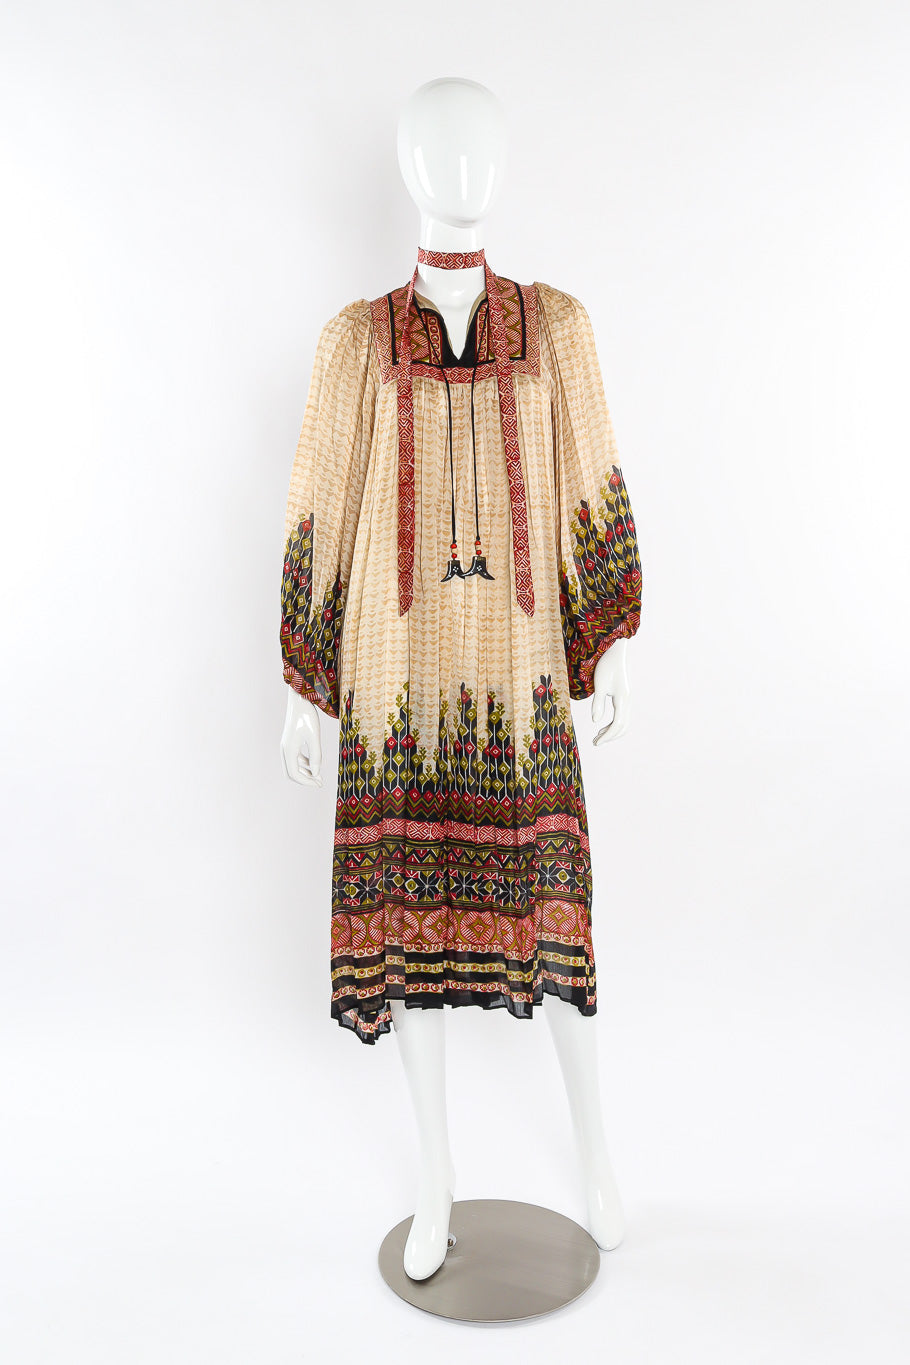 Block print silk dress by Ritu Kumar for Judith Ann Front View. @recessla